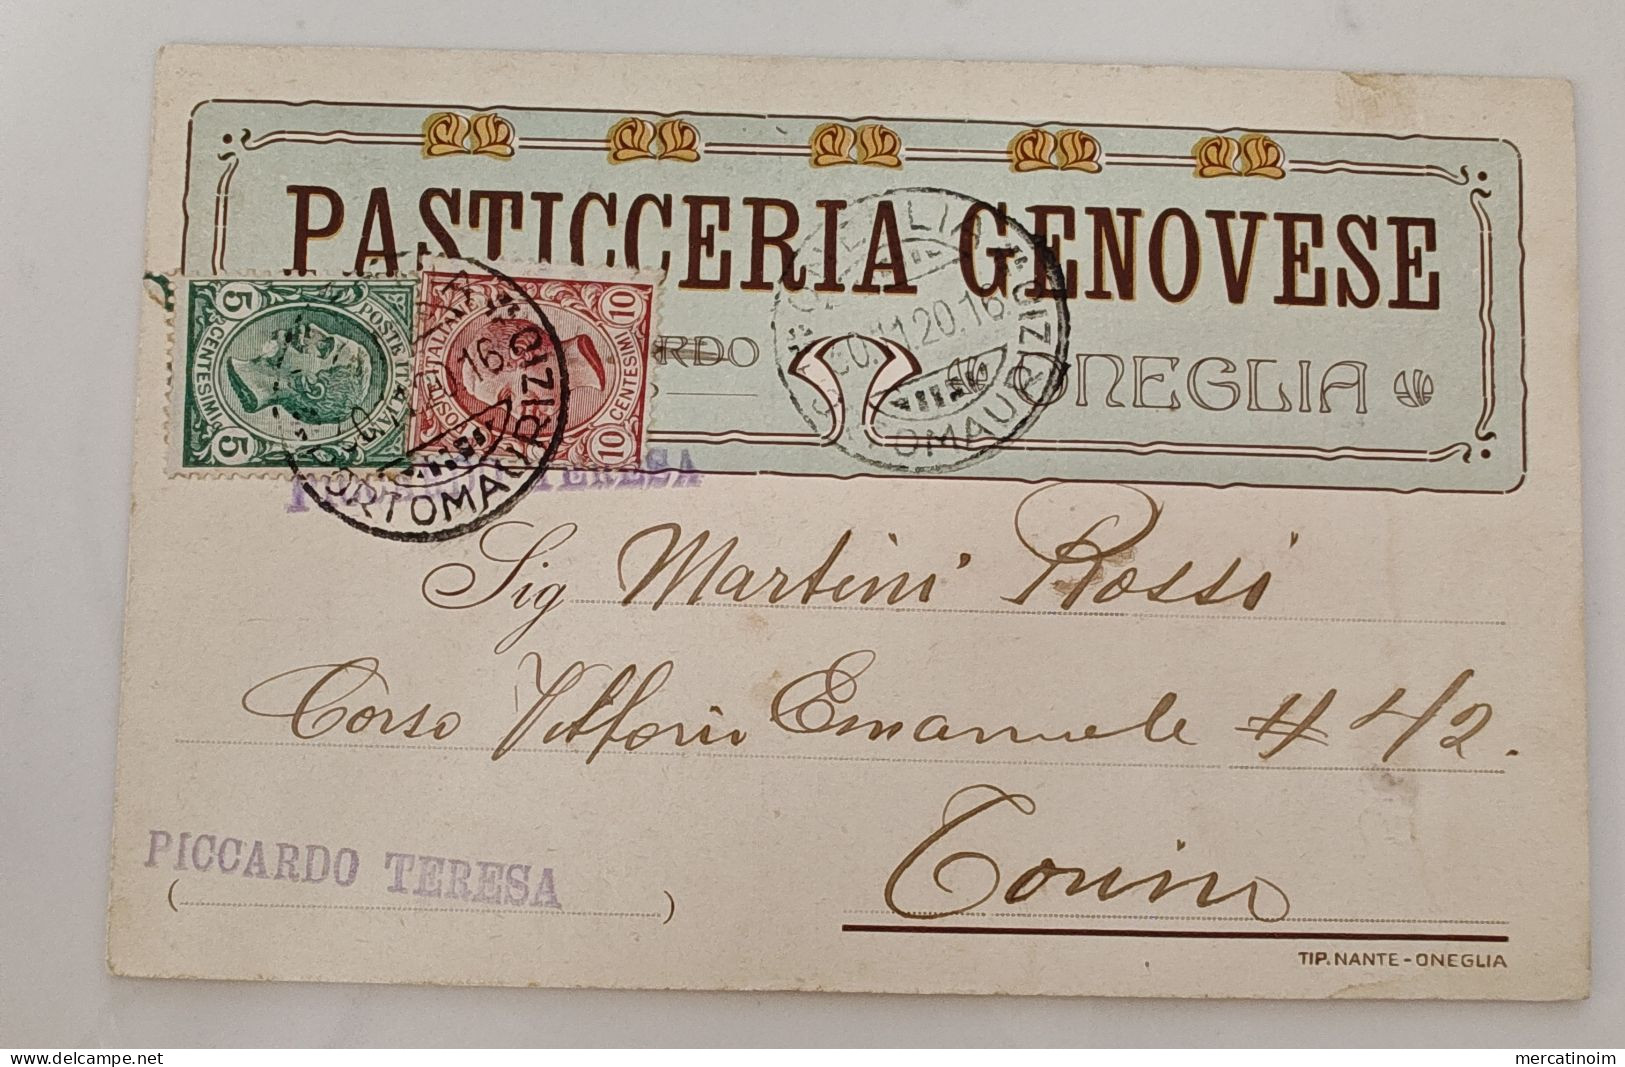 Pasticceria Genovese Piccardo Teresa Imperia Oneglia 1920 - Imperia